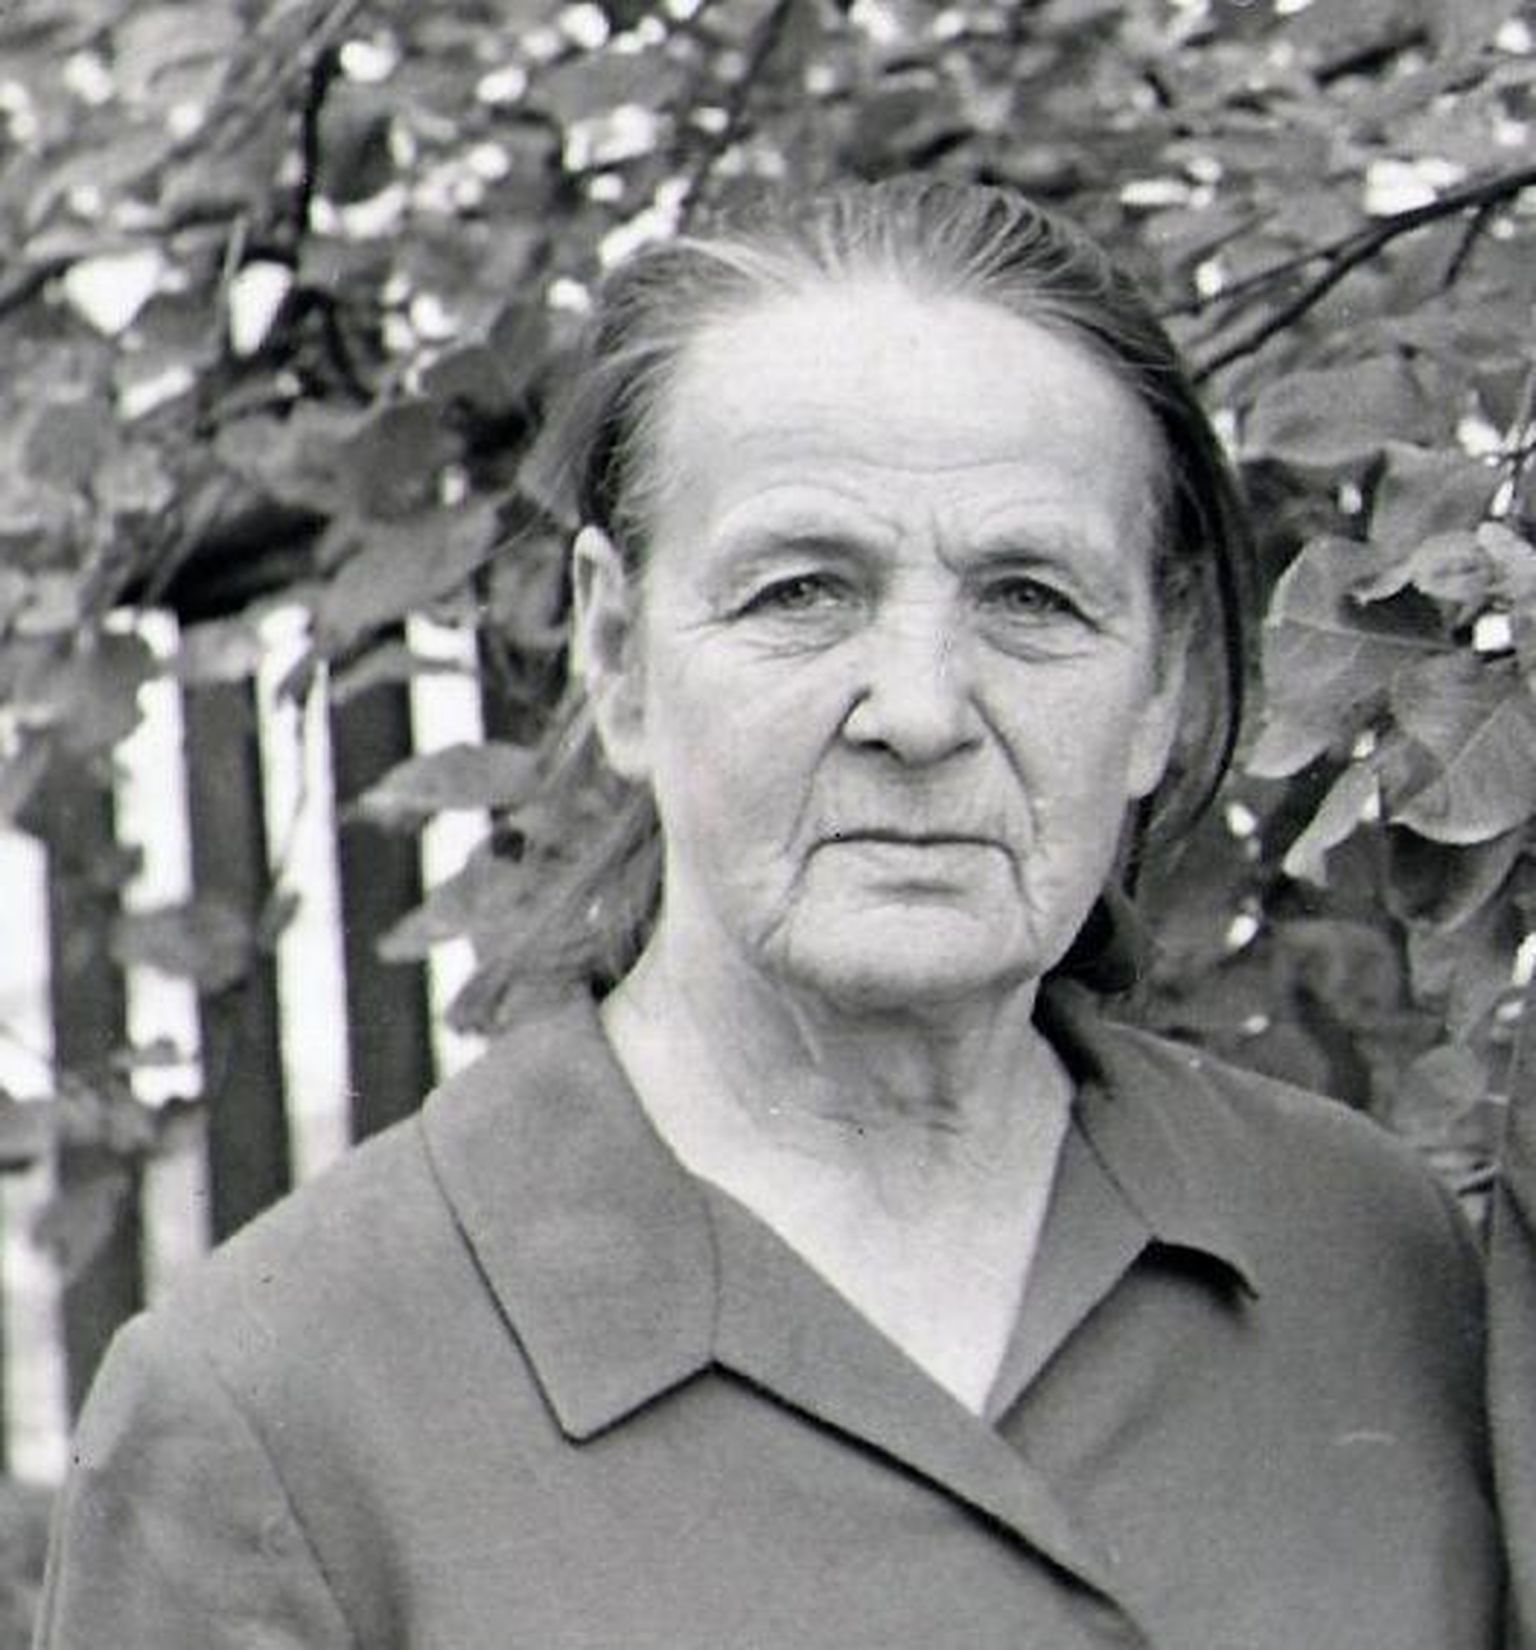 Olga Piirisild sai Võrumaal kuulsaks vanavara kogujana. Tal oli silma asjadele, mis tulevikus haruldasteks eksponaatideks muutusid. Samas oli ta ka aktiivne kommunist. Erakogu